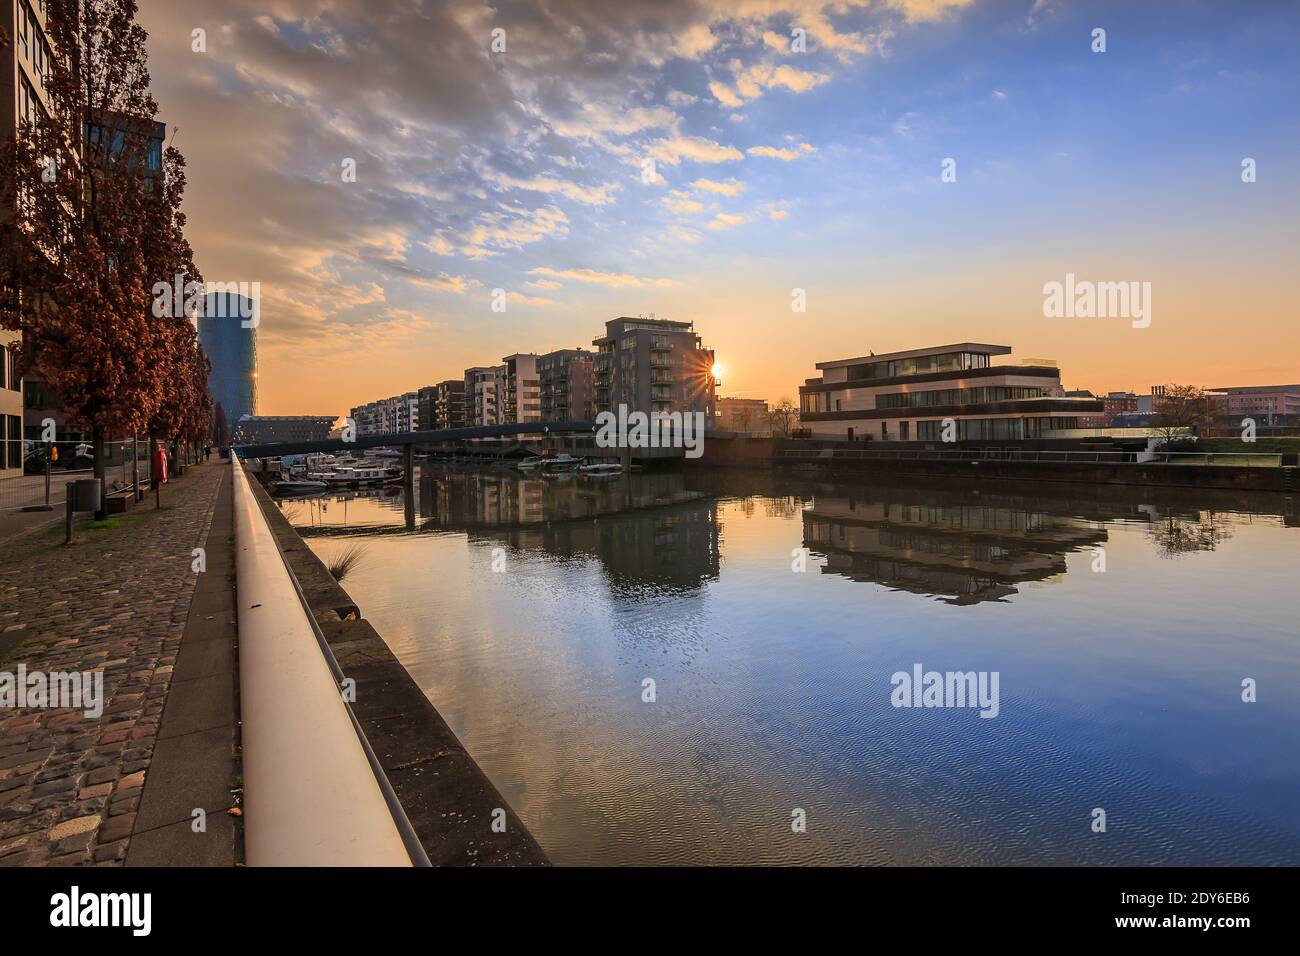 Kanal vom Main am Morgen. Wohngebiet in Frankfurt bei Sonnenaufgang. Wasserfront mit Reflexion. Blauer Himmel und Wolken. Ufer im Hafen an Stockfoto